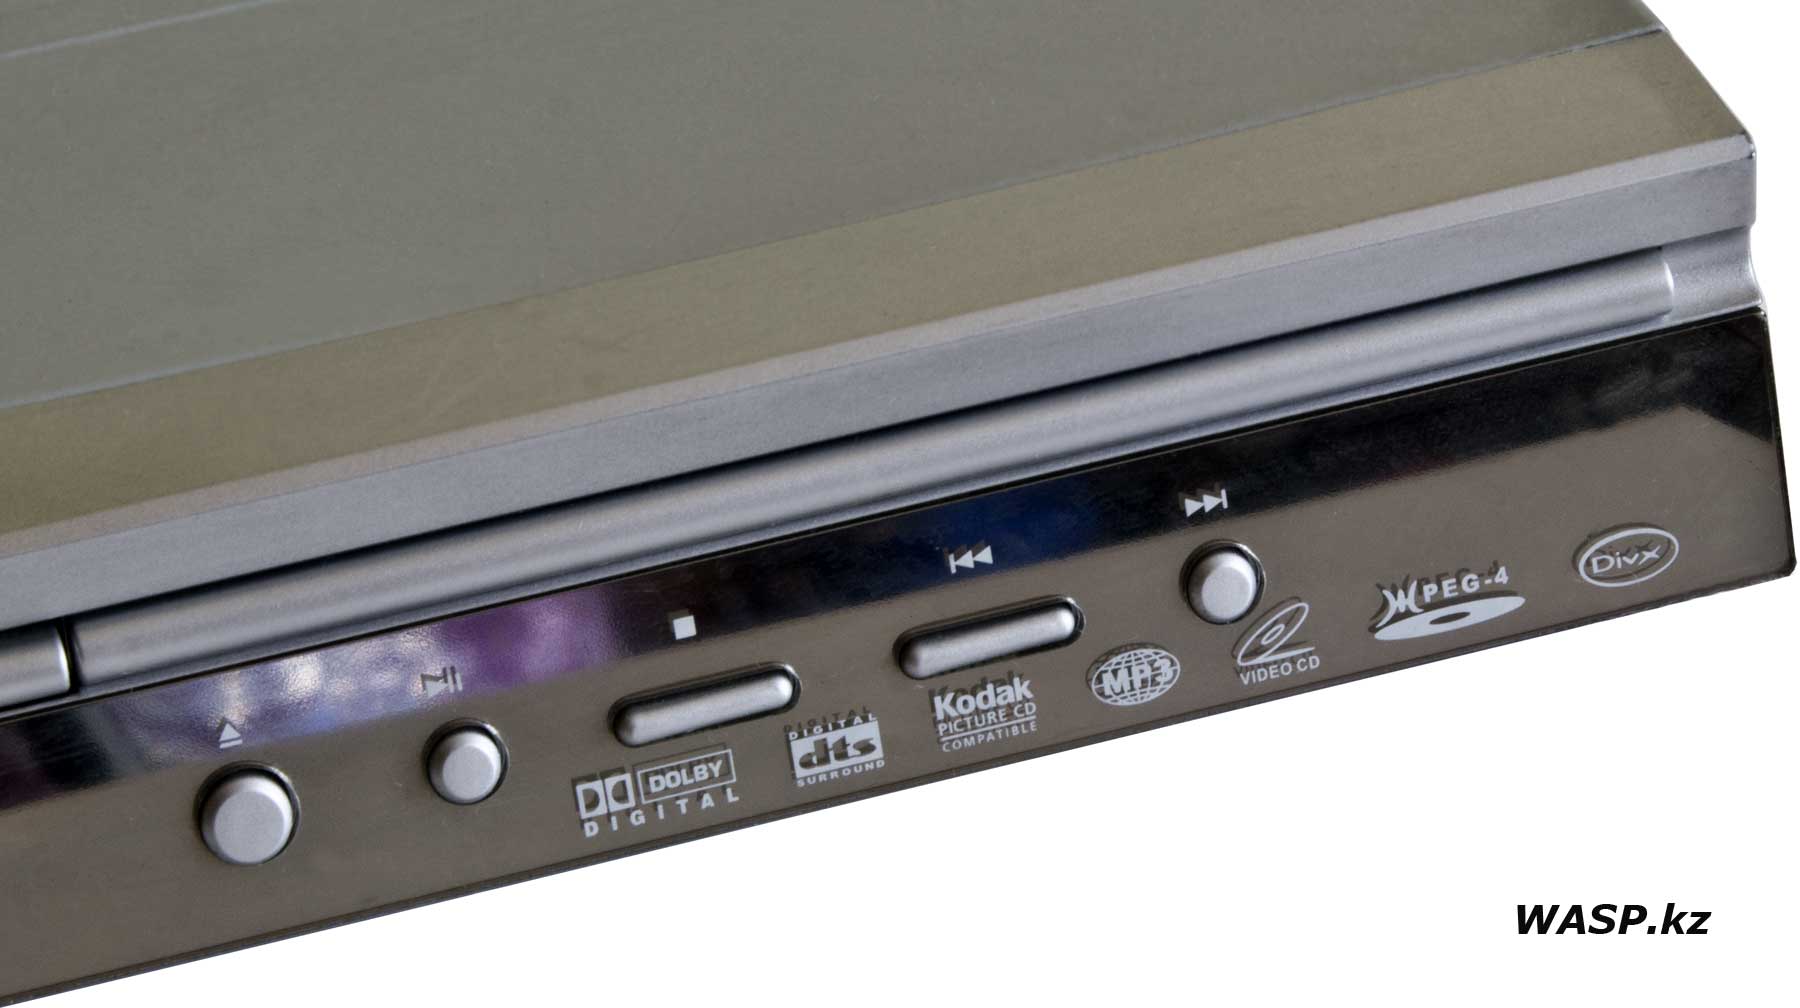 HYUNDAI H-DVD5004 лазерный проигрыватель компакт-дисков, описание